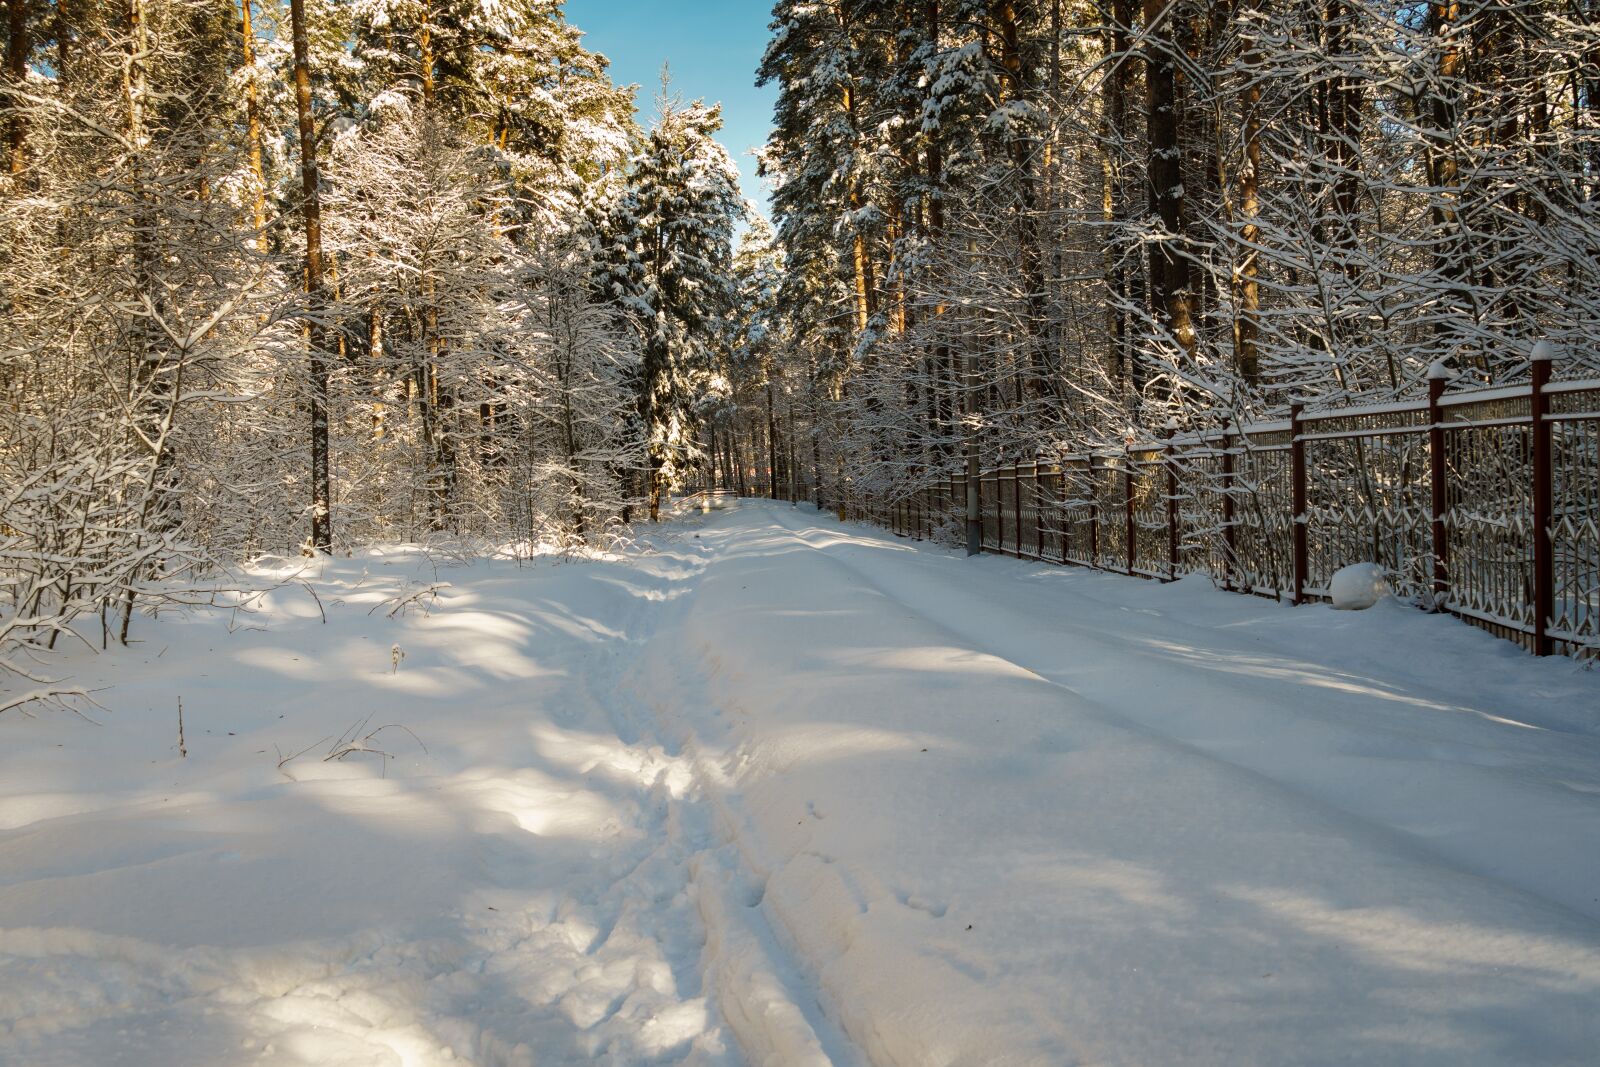 Sony a6300 + Sony Vario Tessar T* FE 24-70mm F4 ZA OSS sample photo. Snow, winter, frost photography